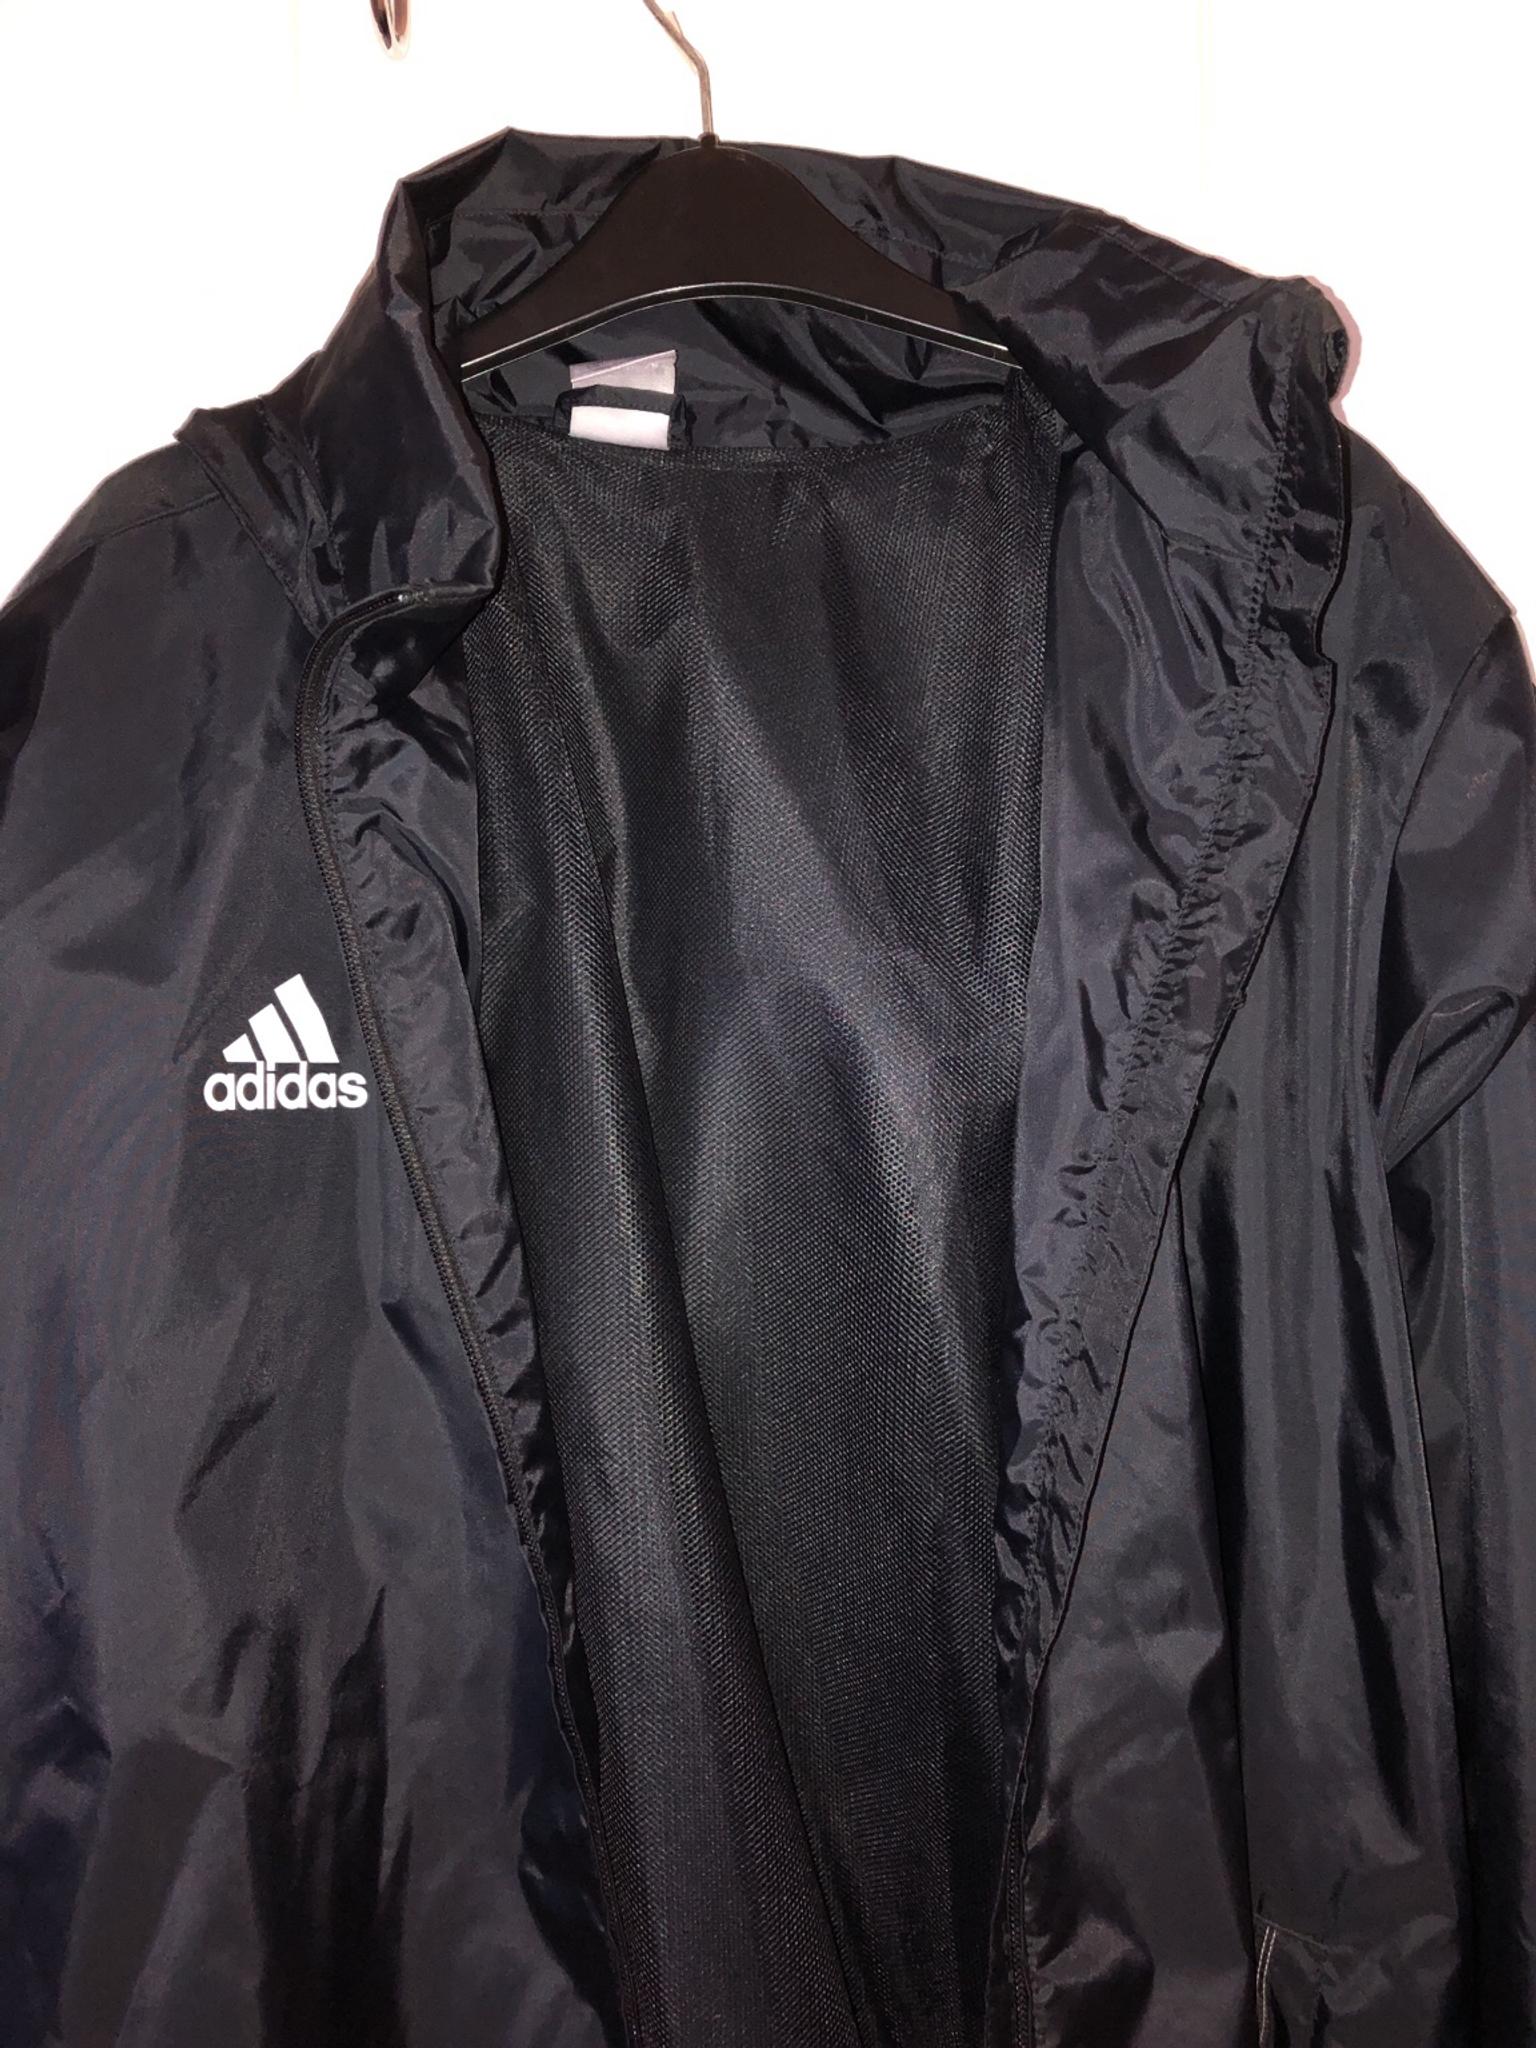 black adidas waterproof jacket